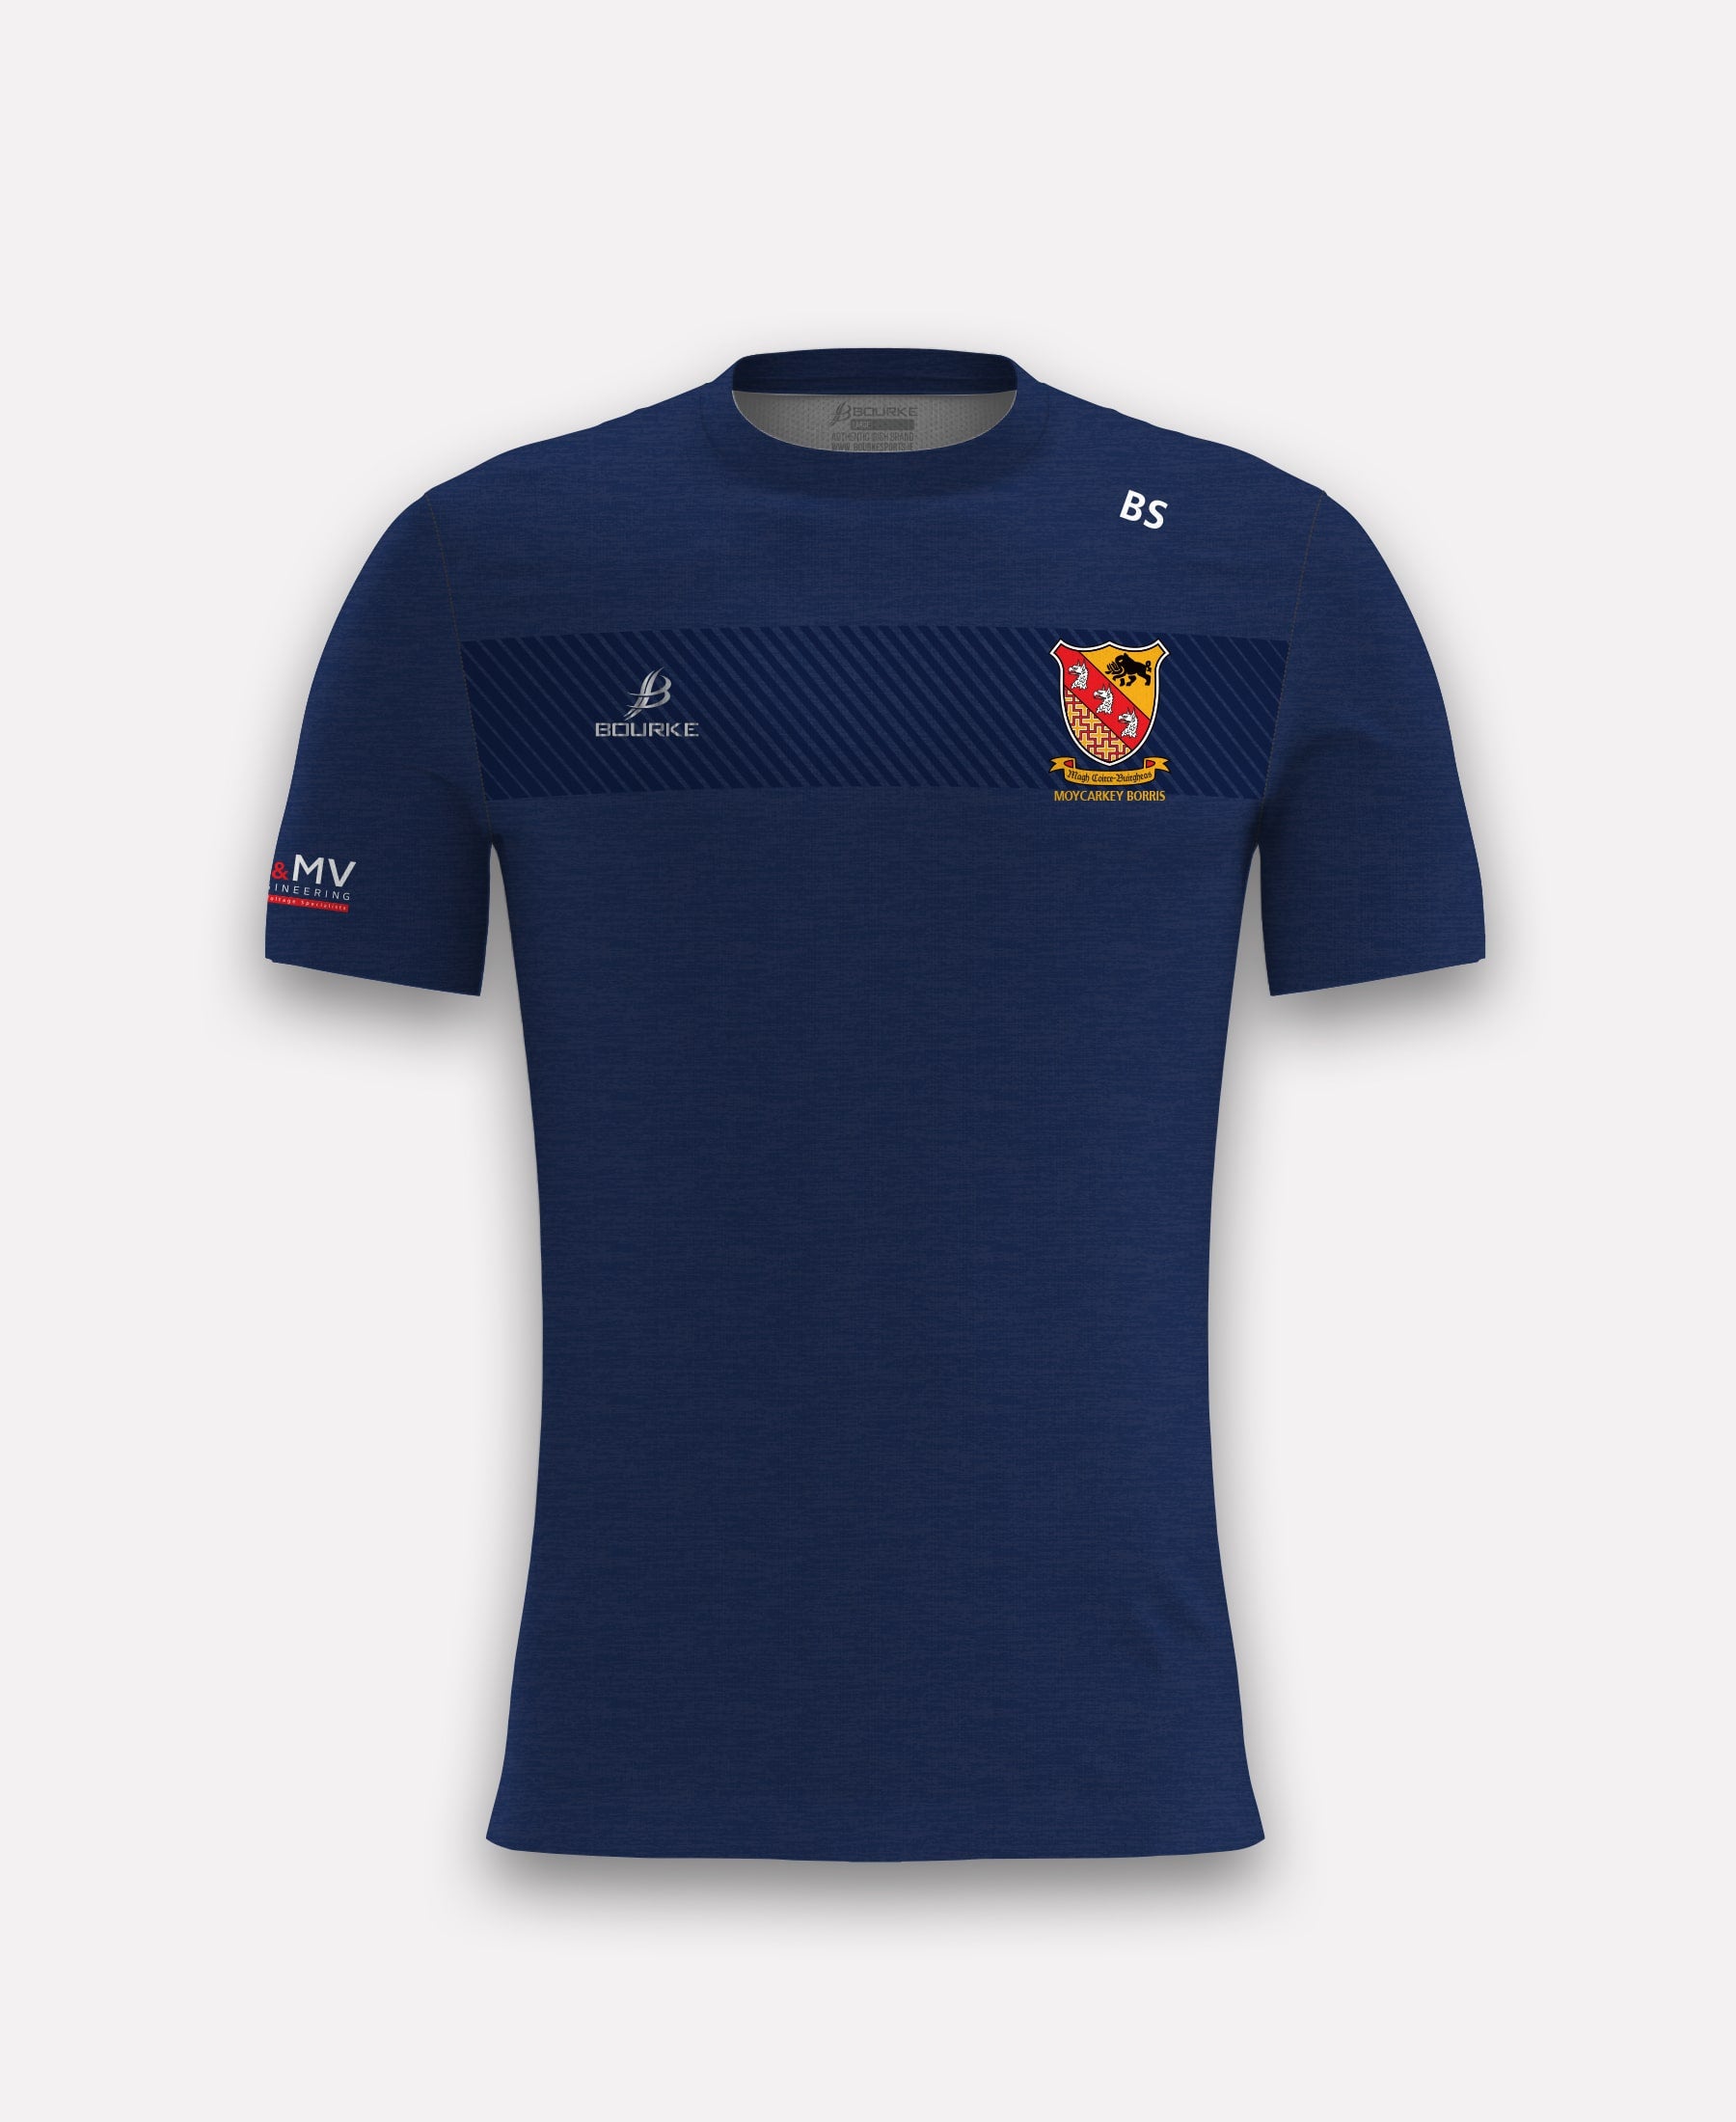 Moycarkey Borris GAA TACA T-Shirt (Navy)